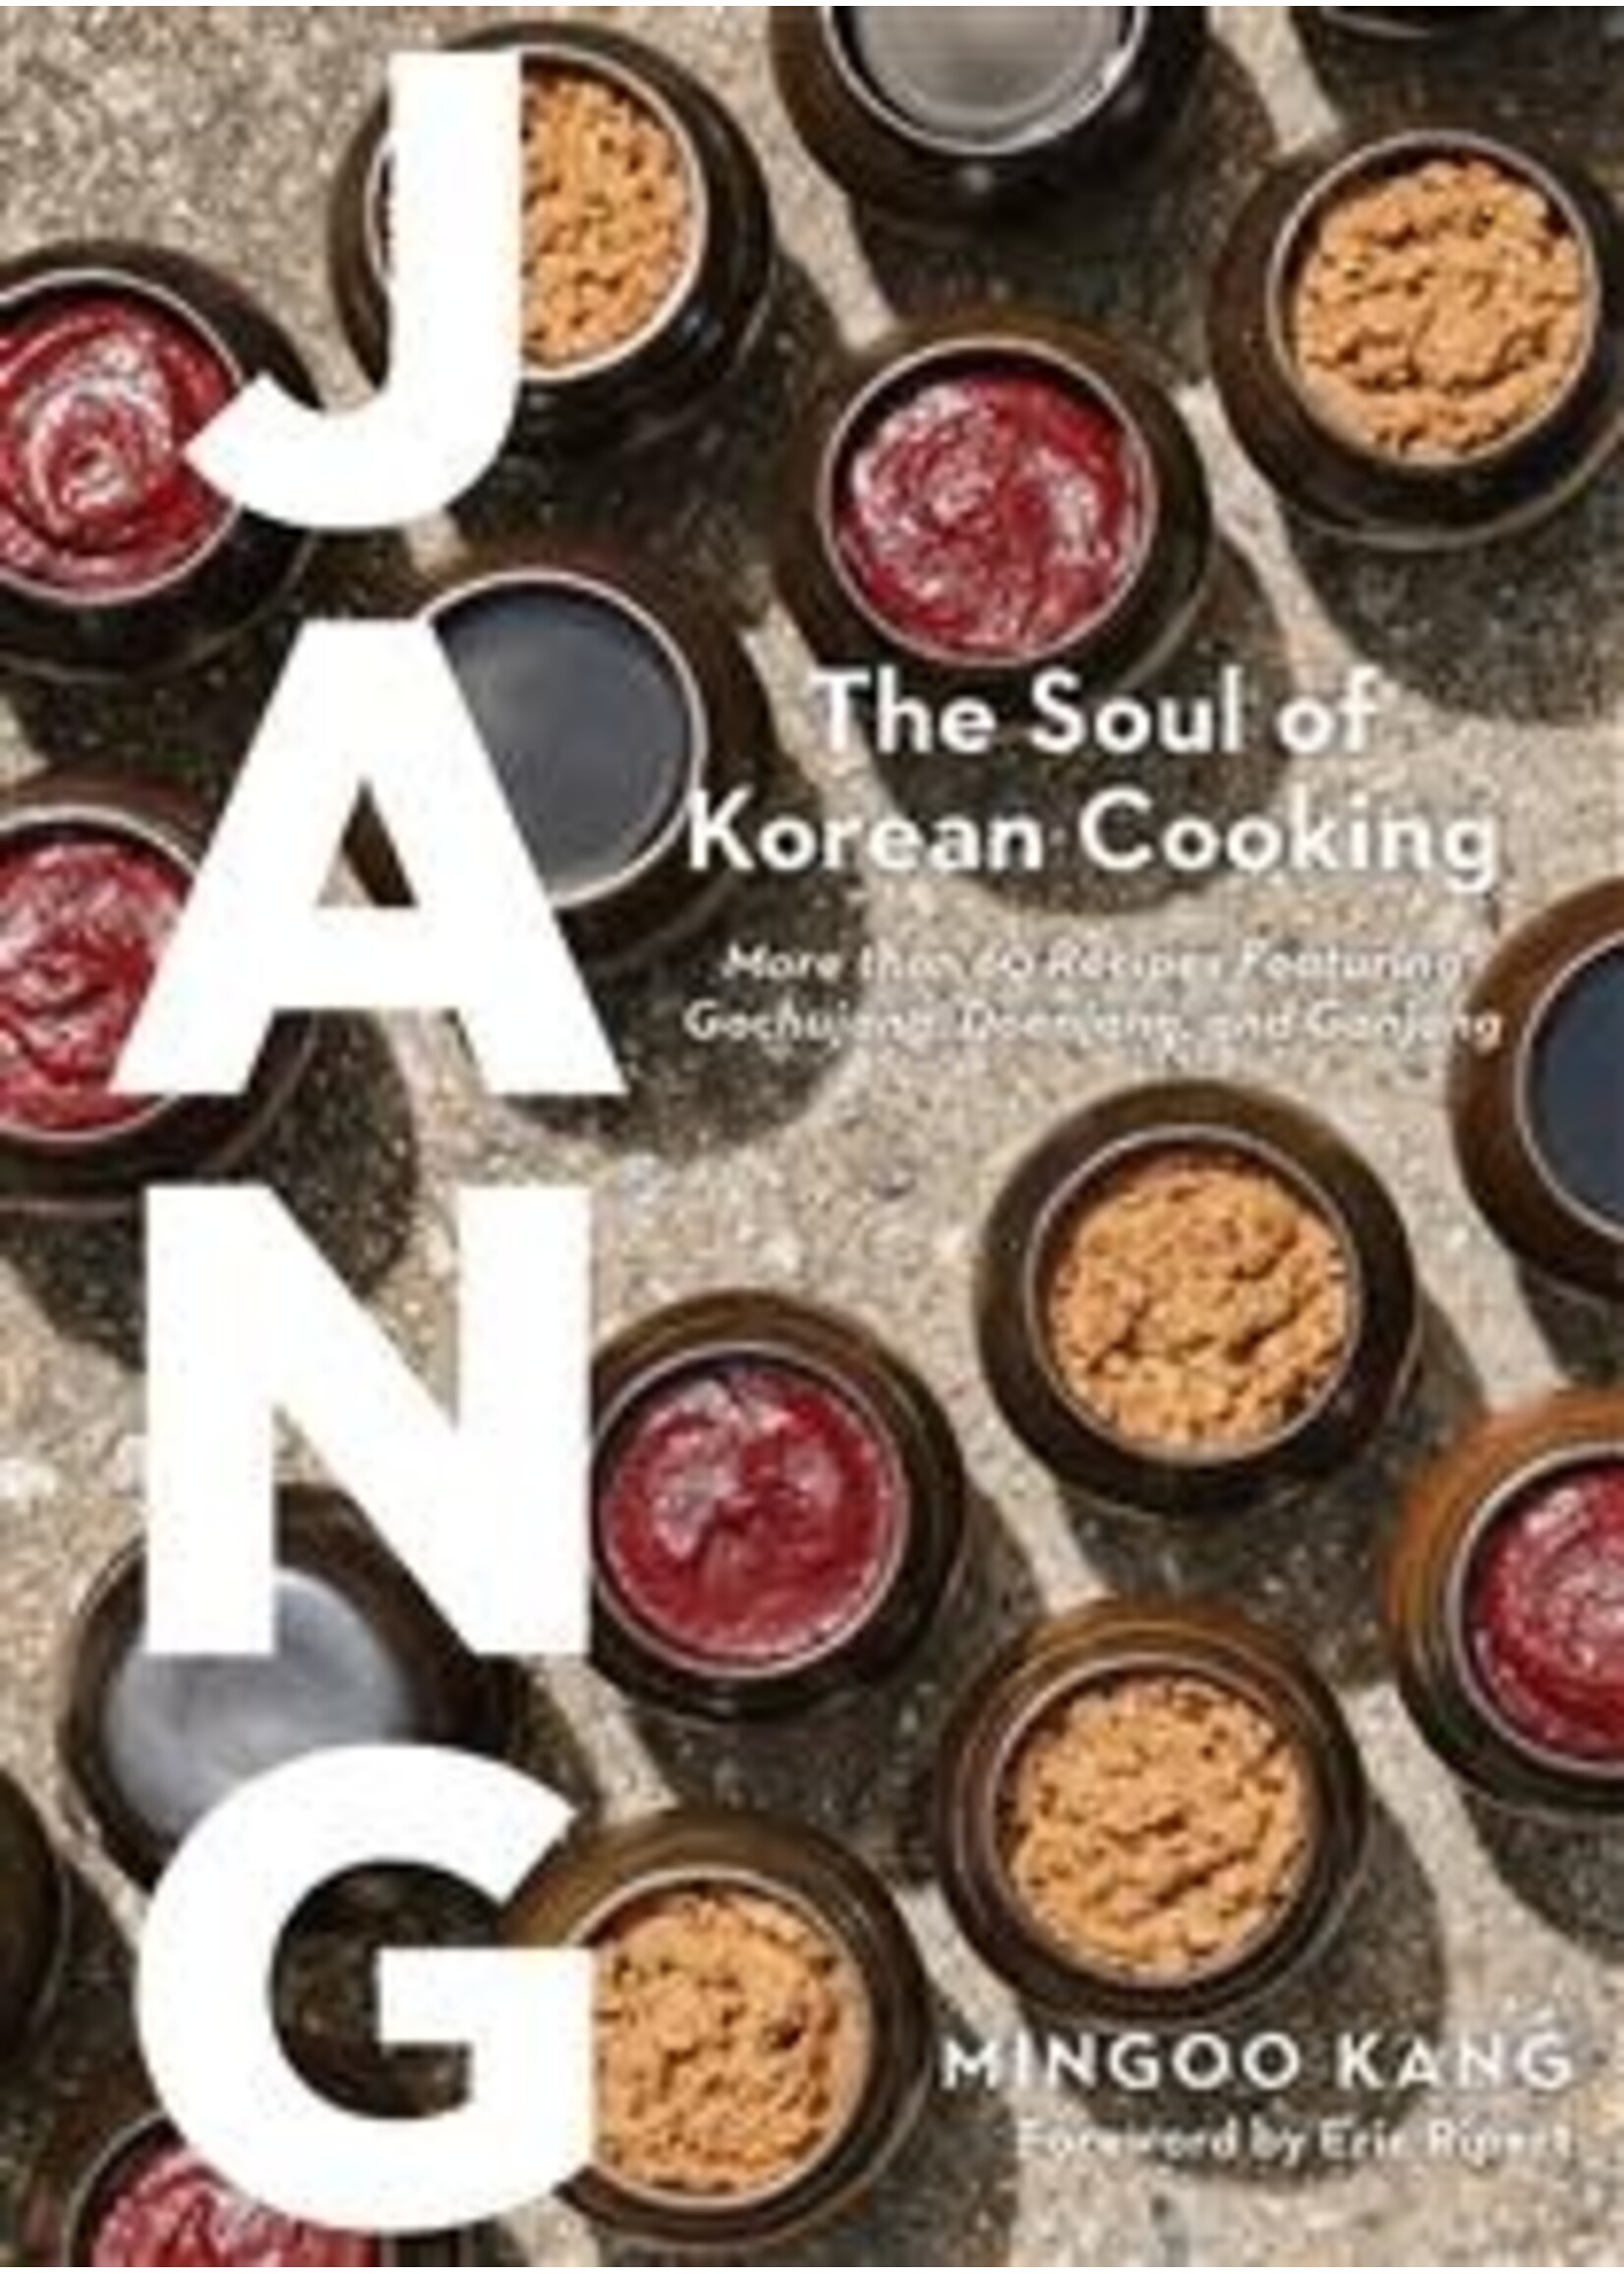 Jang: The Soul of Korean Cooking by Mingoo Kang, Joshua David Stein, Nadia Cho